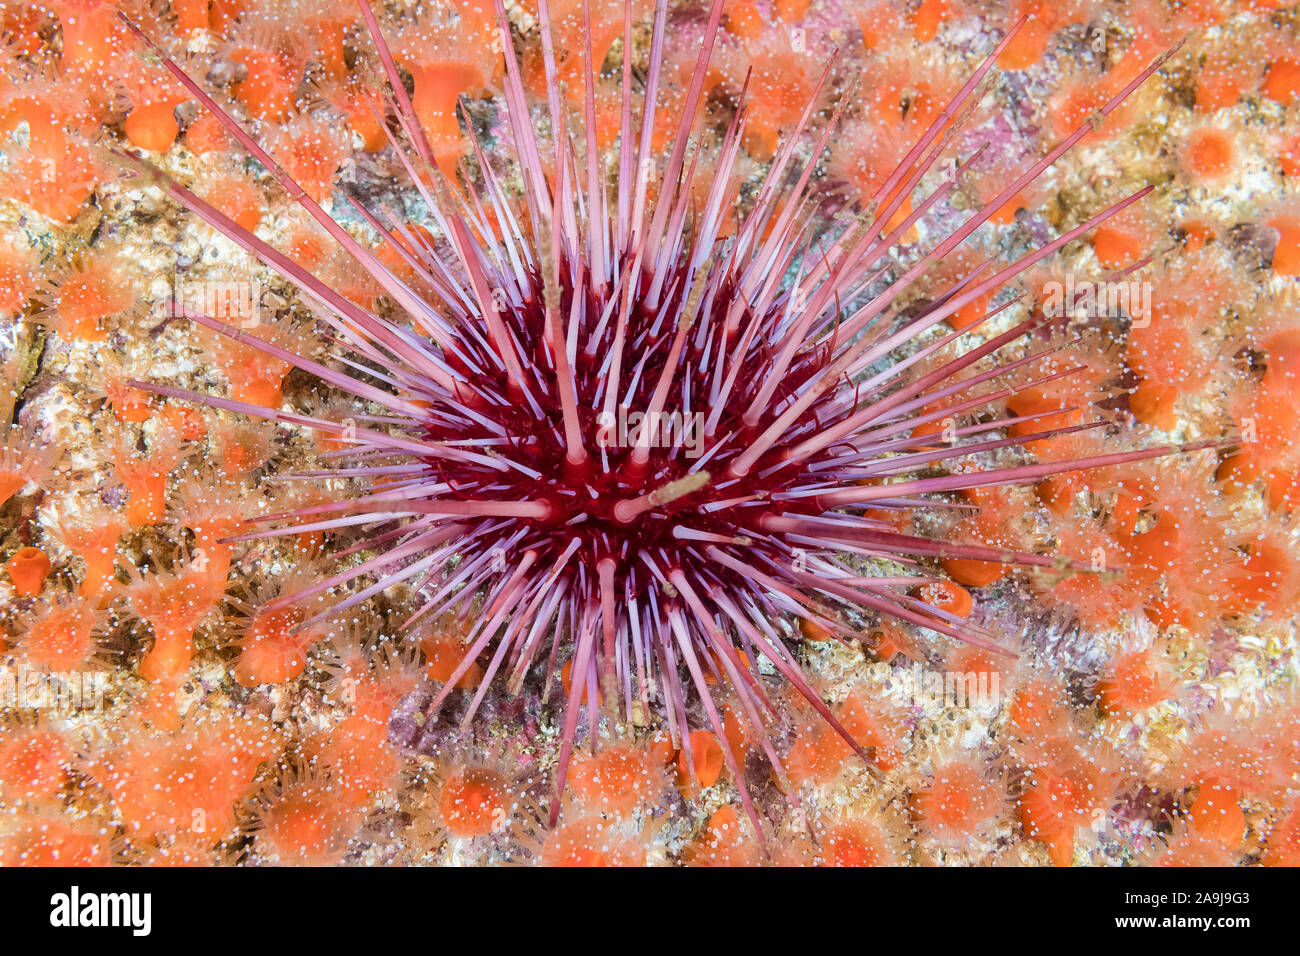 Red Sea Urchin, Mesocentrotus franciscanus, fraise, anmone Corynactis californica, Barkley Sound, l'île de Vancouver, Colombie-Britannique, Canada, Paci Banque D'Images